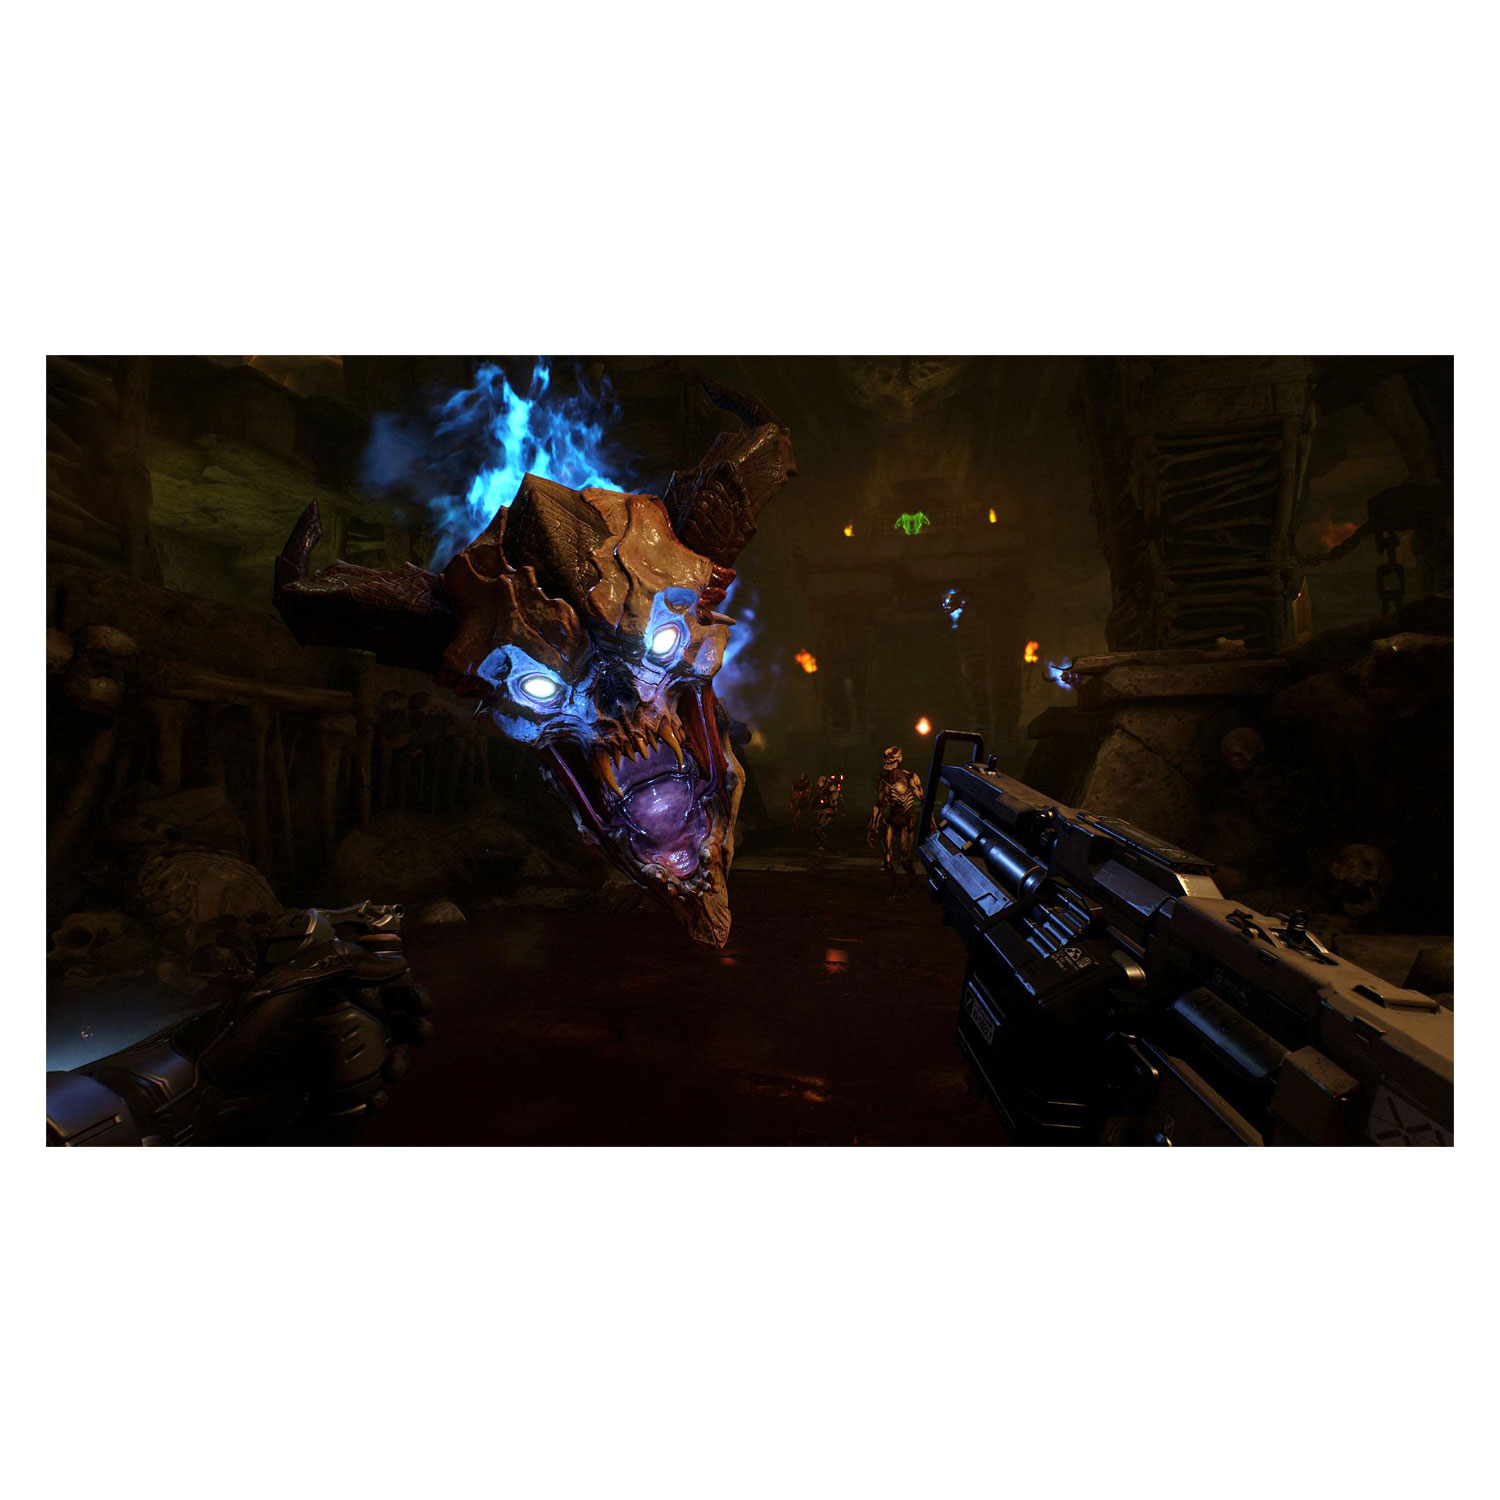 Jogo Doom VFR para PS4